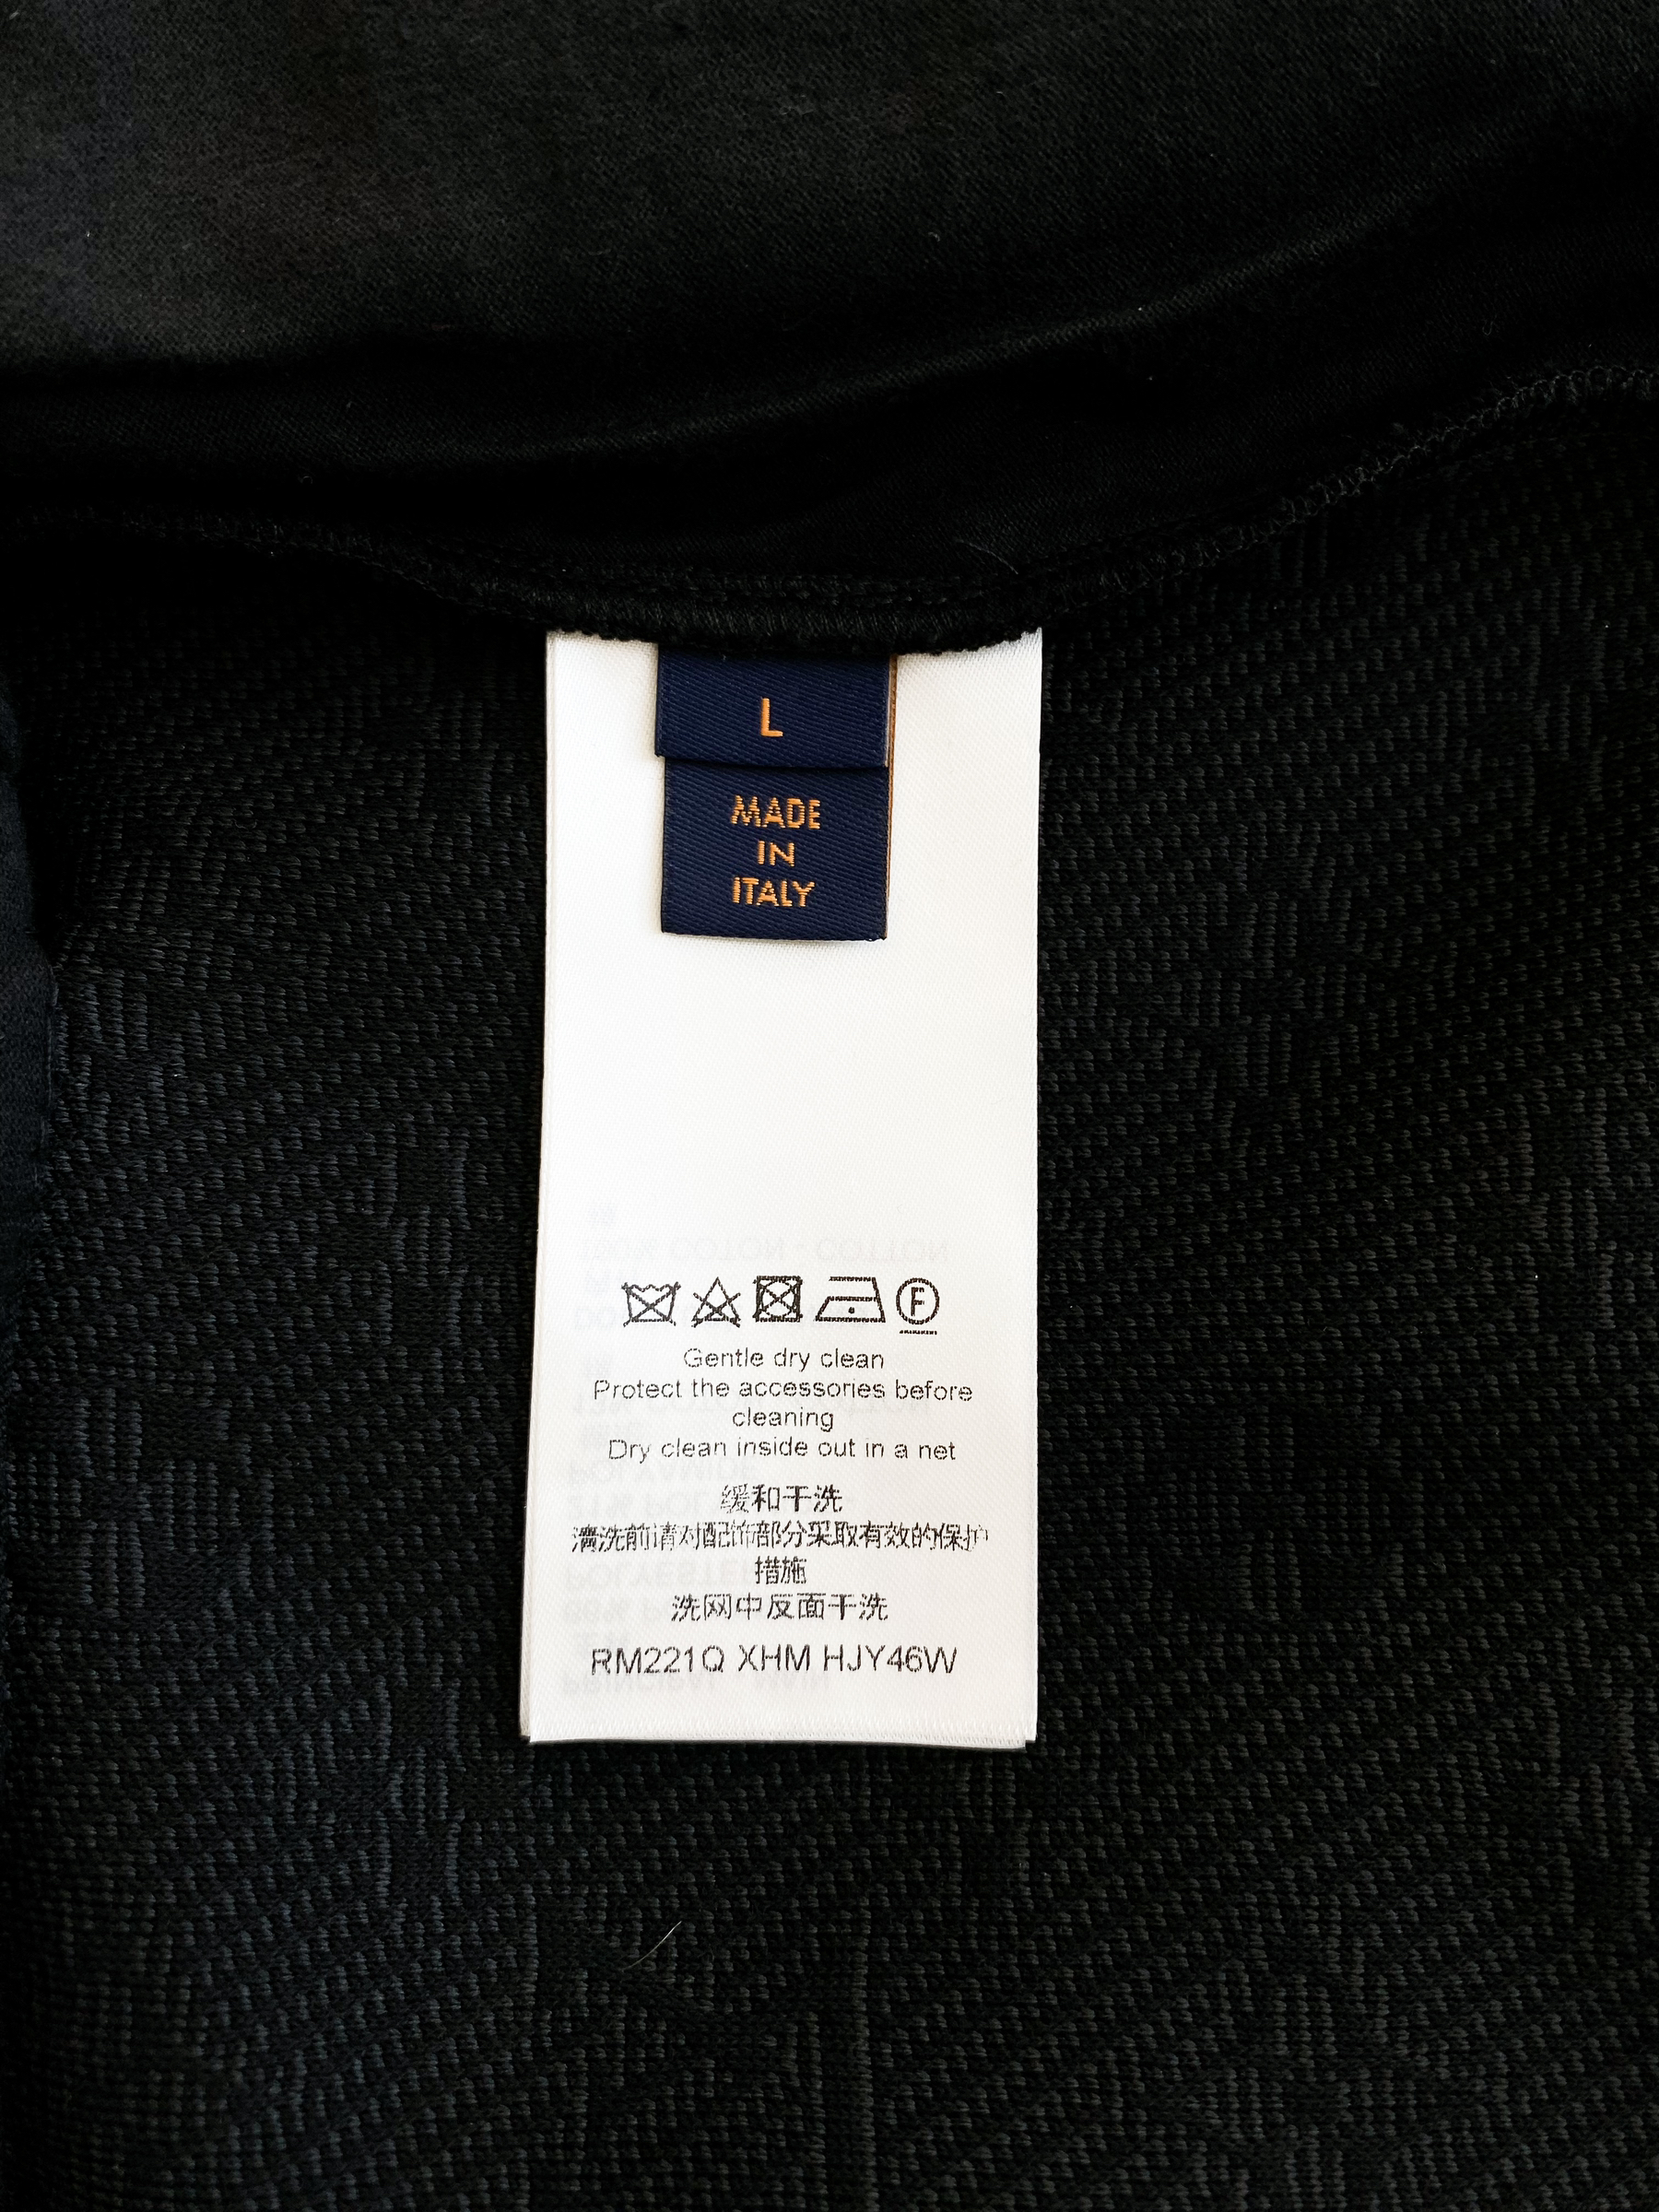 Louis Vuitton Monogram Track Pants BLACK. Size M0